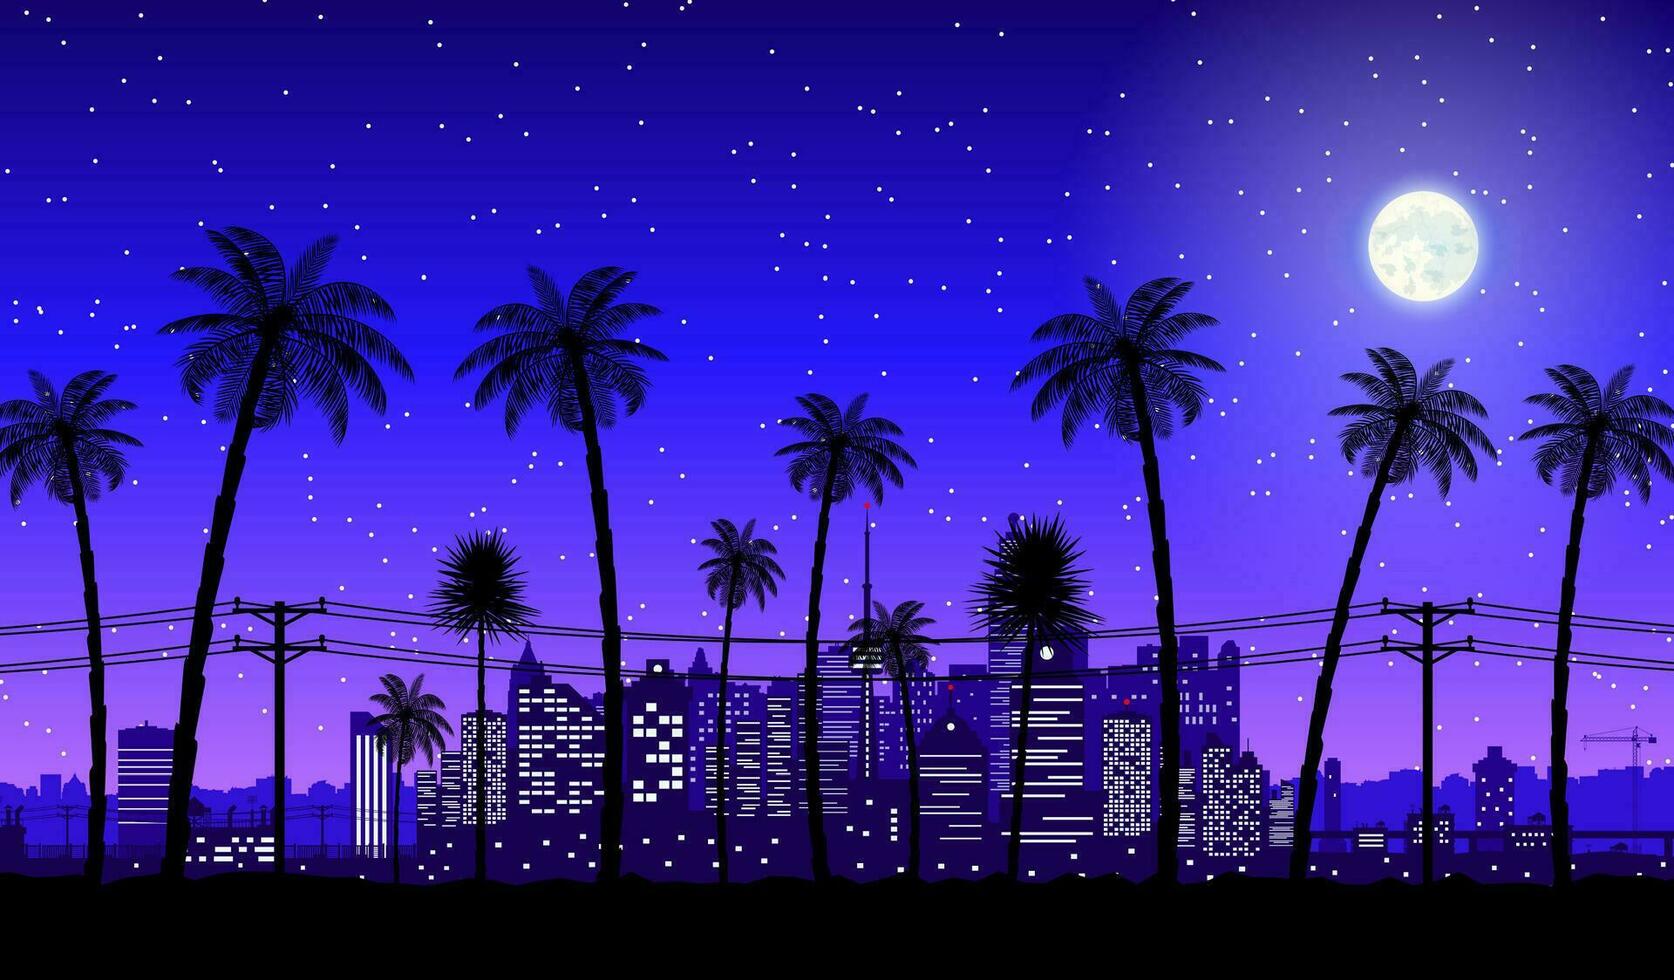 Stadt Horizont Silhouette beim Dämmerung. Wolkenkratzer, Türme, Büro und wohnhaft Gebäude. Stadtbild unter Nacht Himmel, Mond und Palme Baum. Vektor Illustration